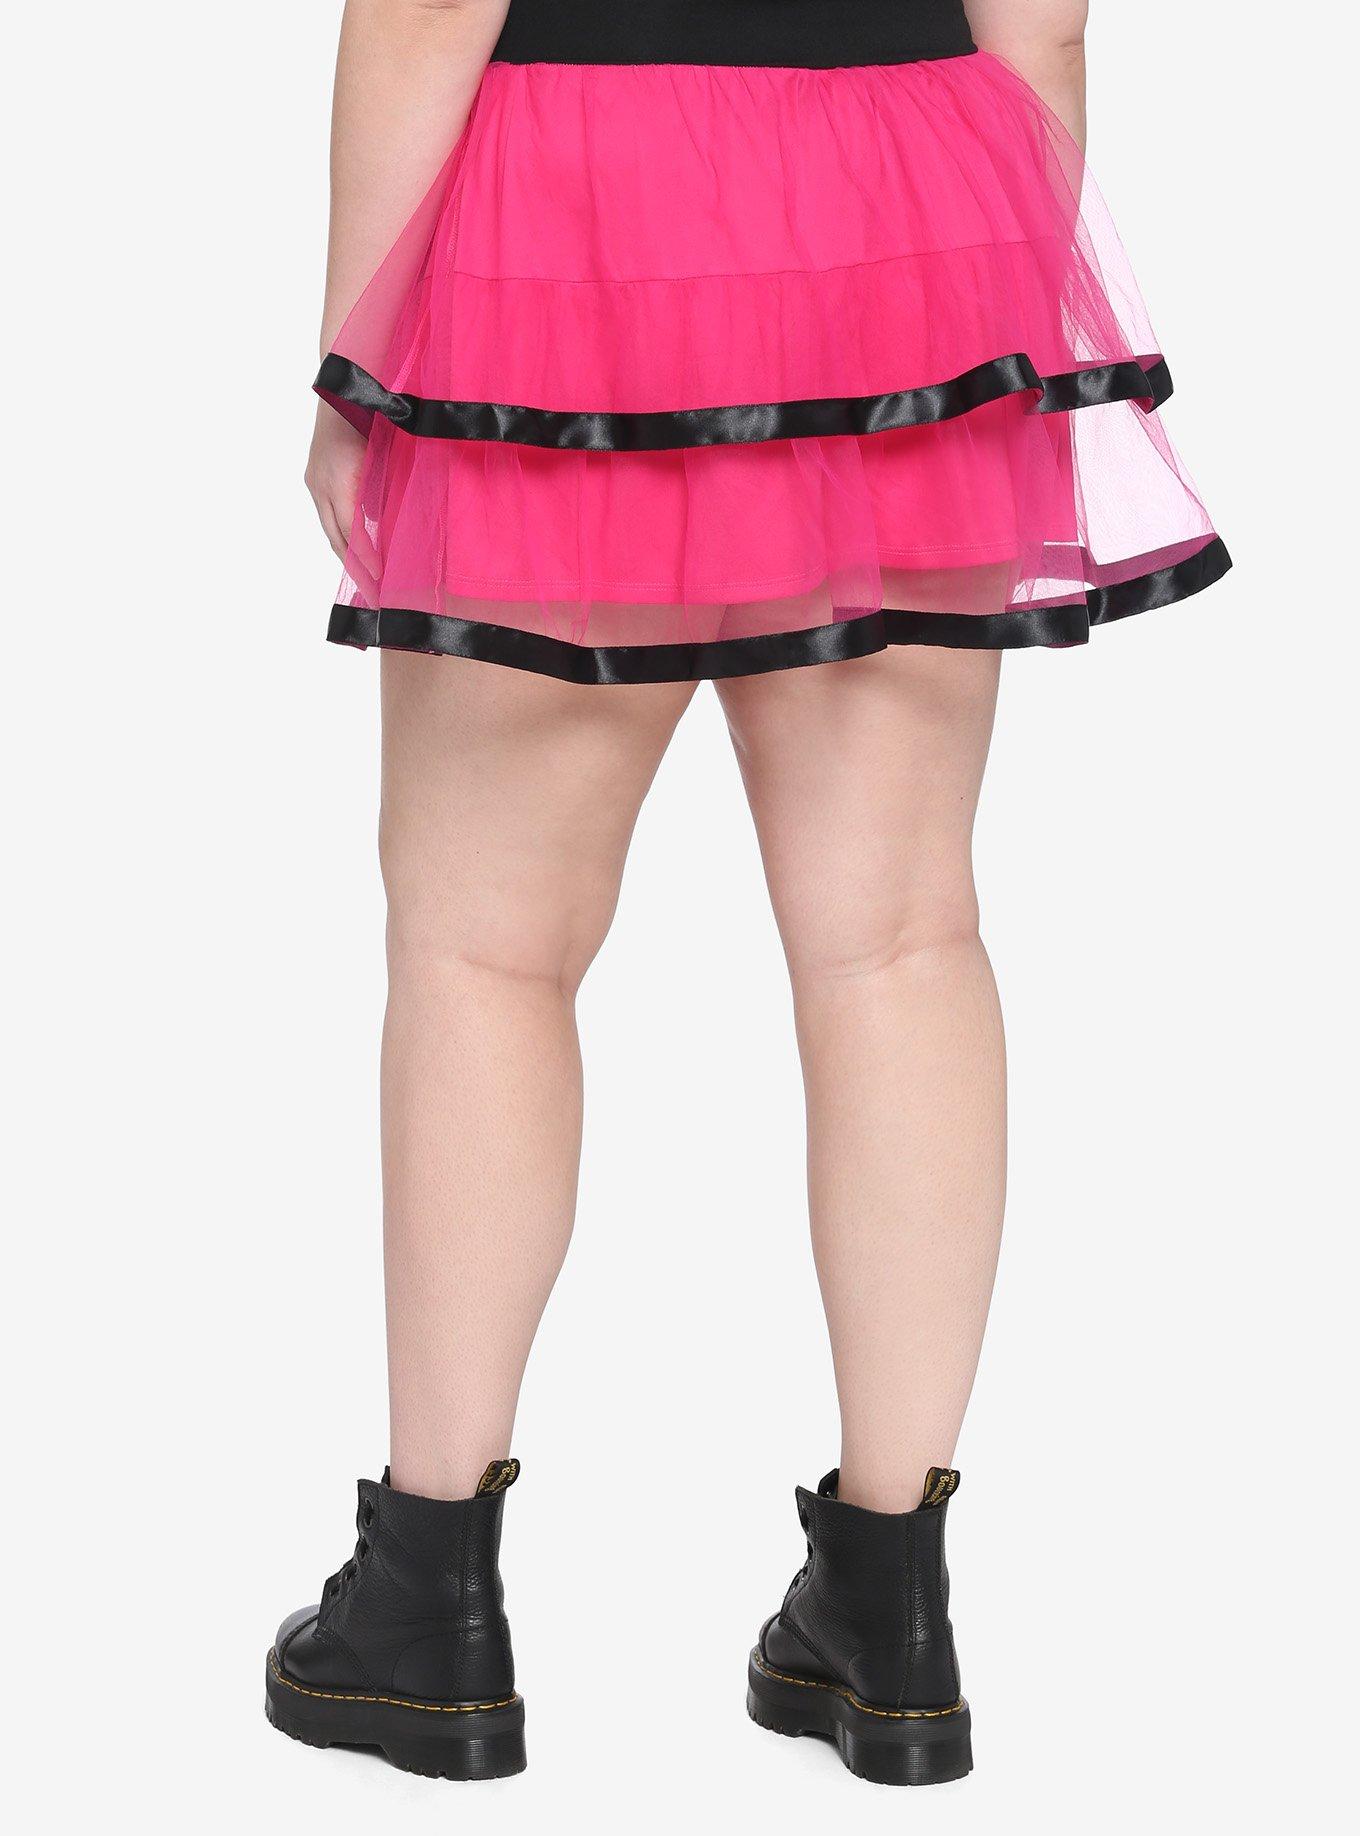 Hot Pink & Black Tutu Skirt Plus Size, PINK, alternate